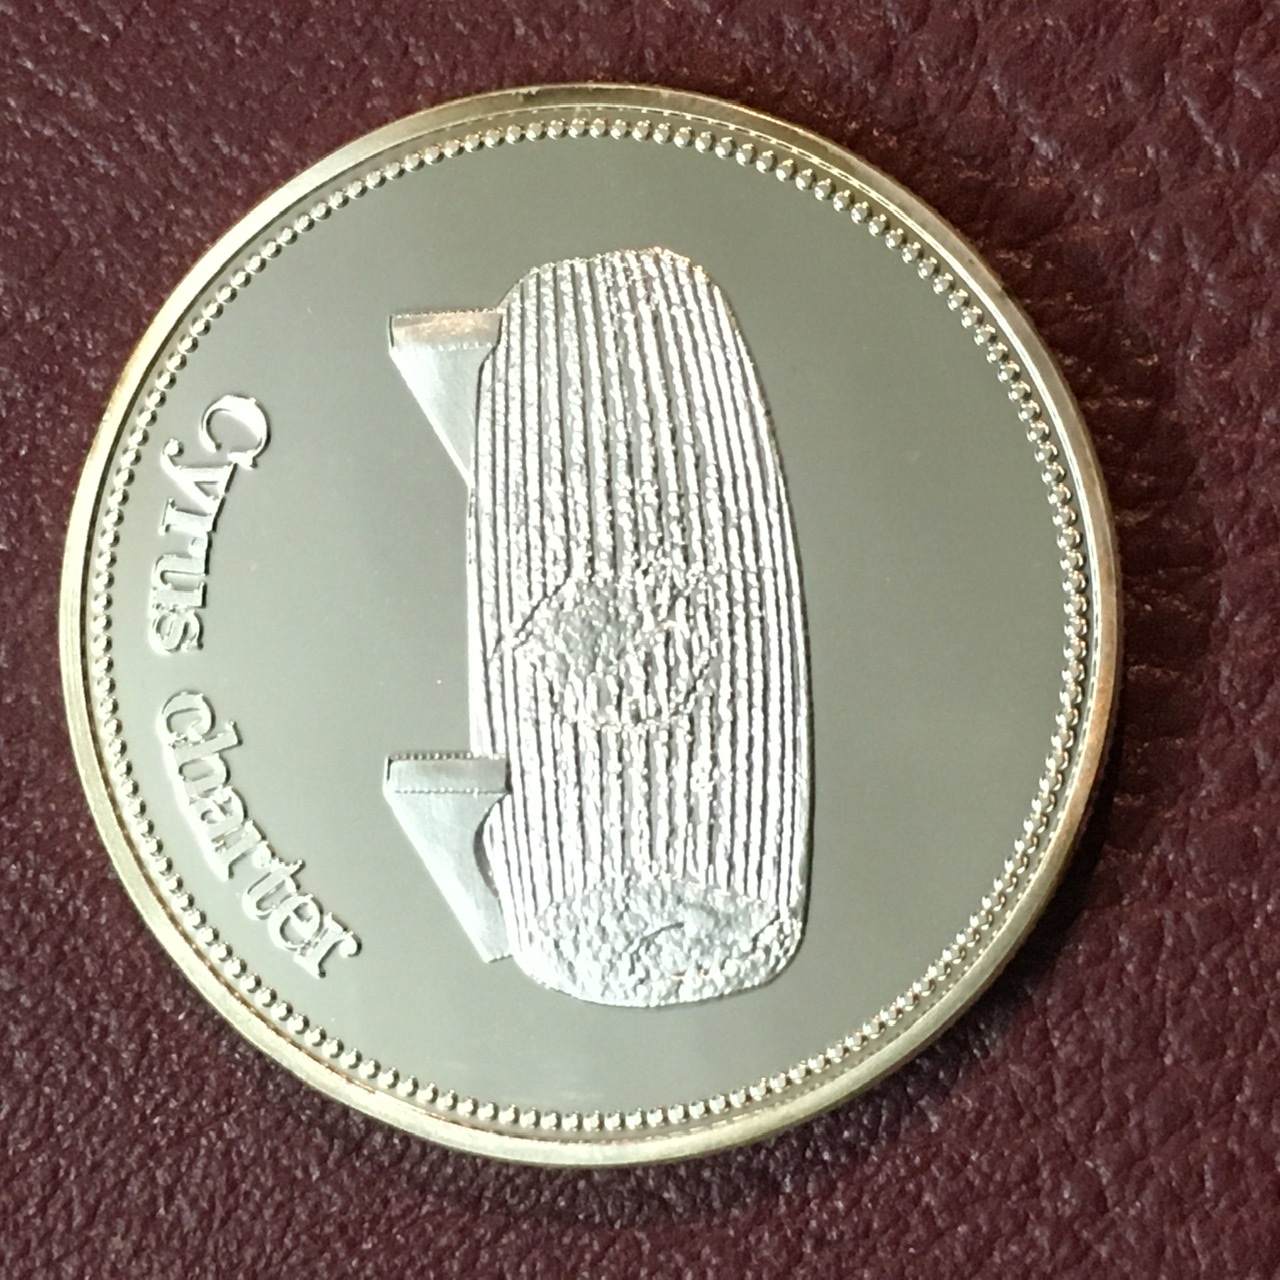 مدال منشور کوروش با ابکاری نقره و کیفیت بانکی همراه با کپسول نگهدارنده